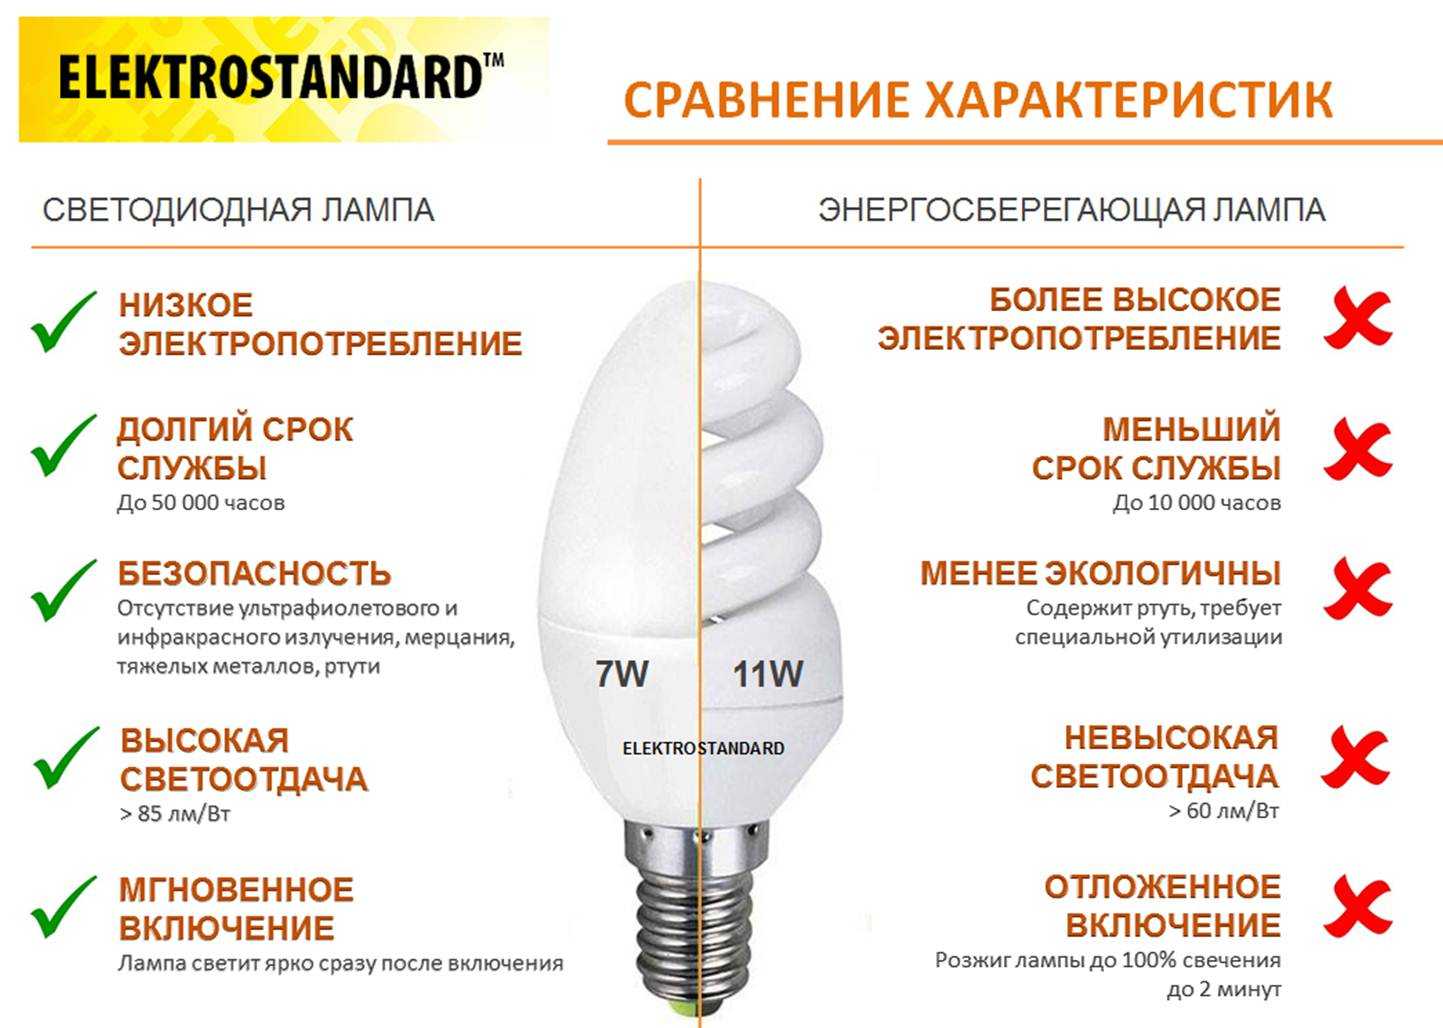 Люминесцентные светильники: характеристики и устройство | технологии 21 века умный дом